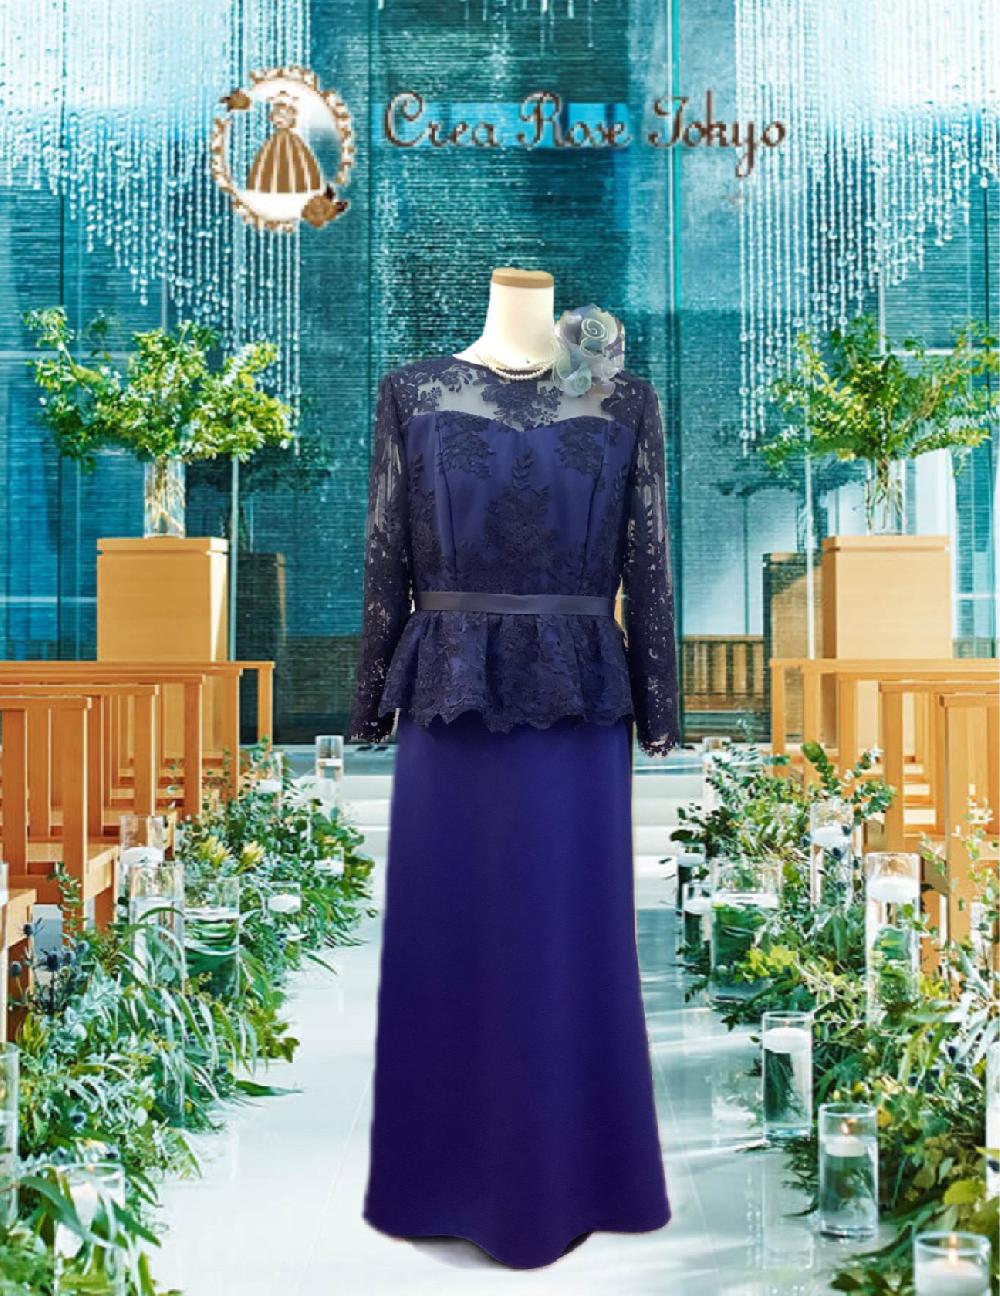 クレアローズ オリジナル正礼装【ヴェロニカデルフィードレス】美を追求し、計算された刺繍とライン画像